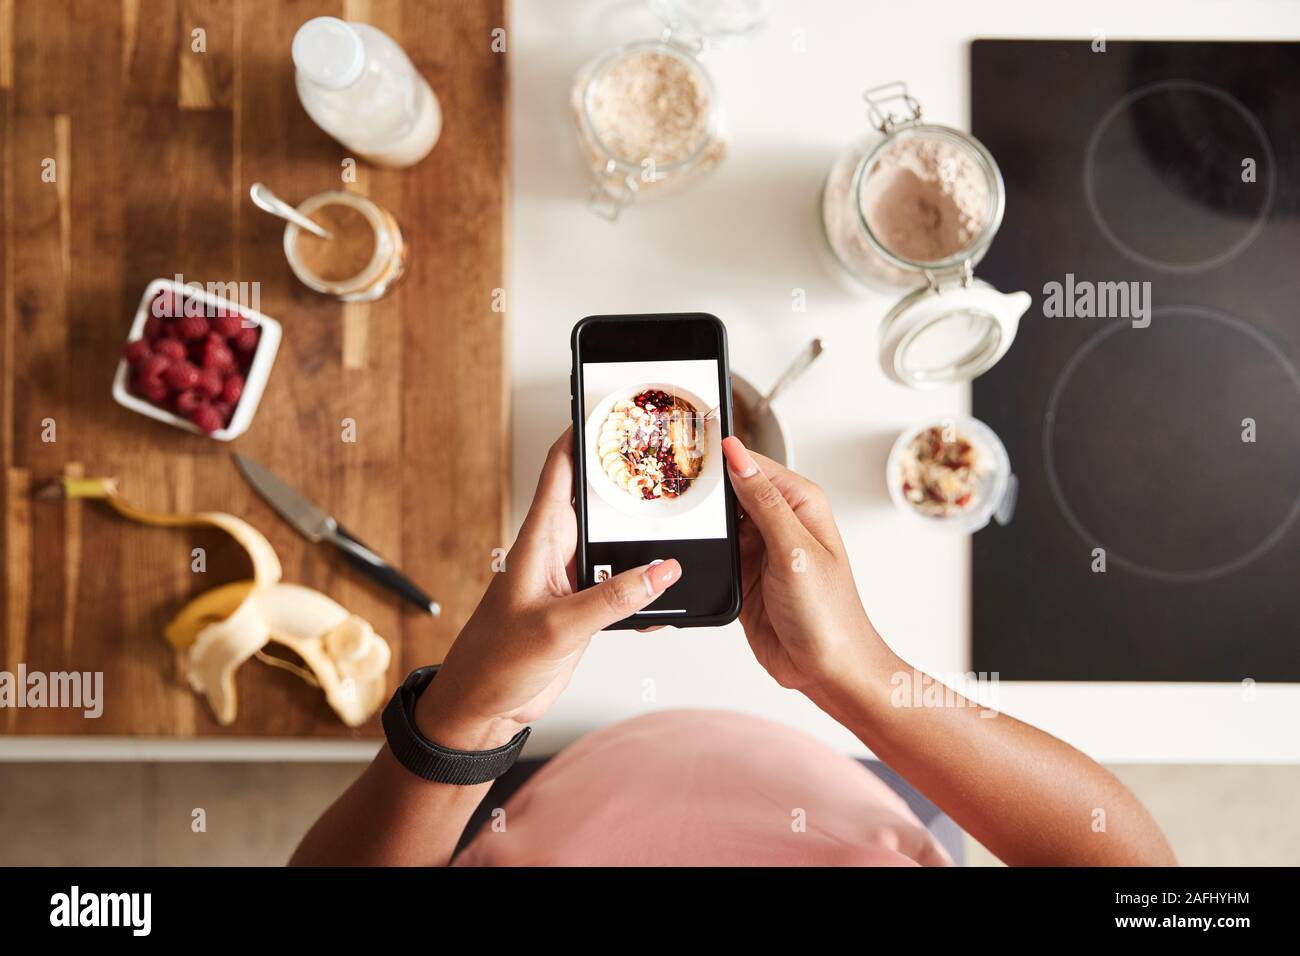 Fotografía cenital de mujer de tomar la foto de un desayuno saludable en el teléfono móvil en el hogar después del ejercicio Foto de stock